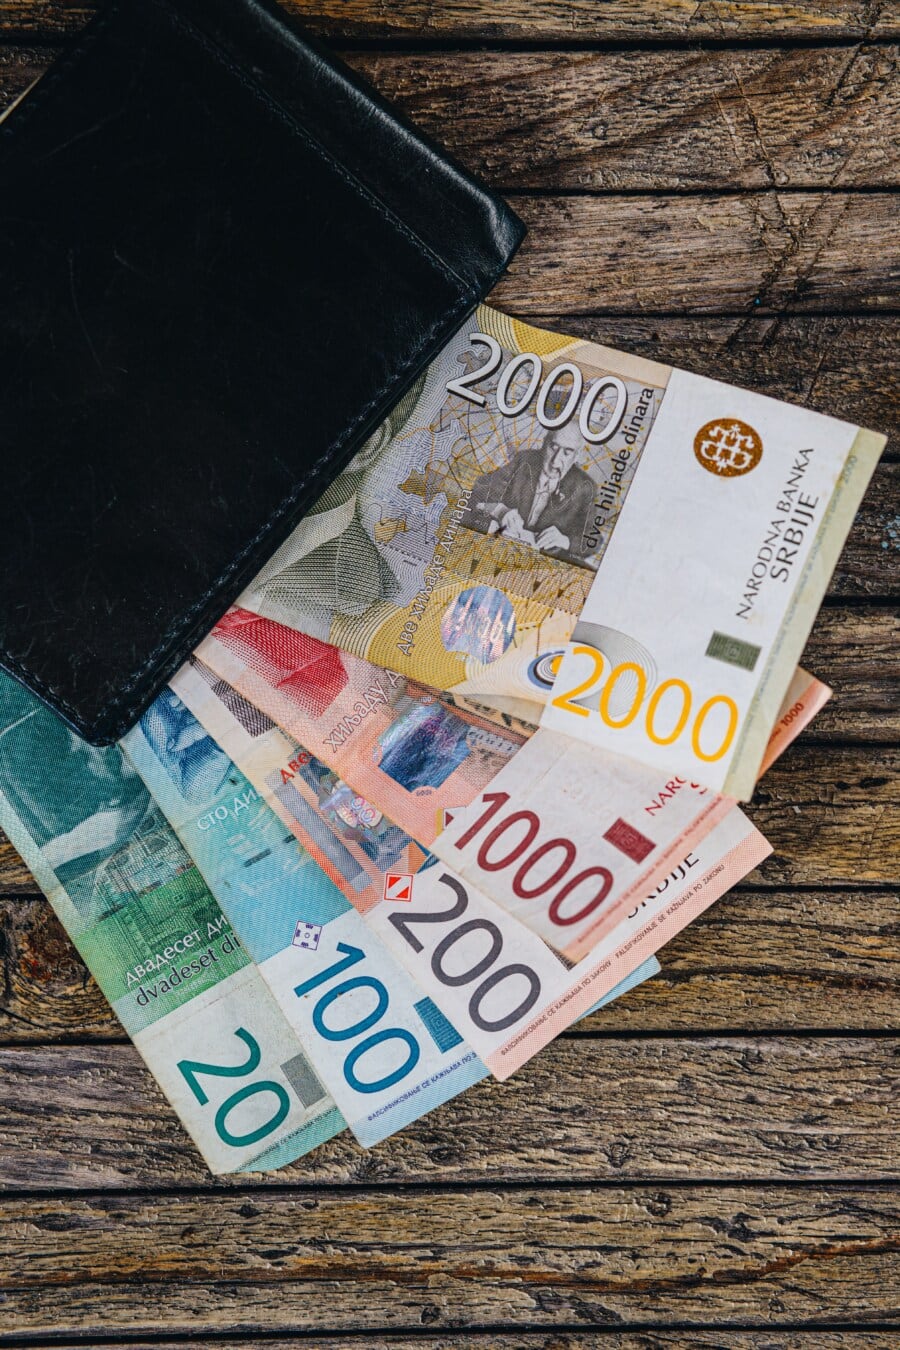 Serbischer Dinar, Bargeld, Brieftasche, Banknote, Papiergeld, Inflation, Investition, Darlehen, Kredit, Finanzen